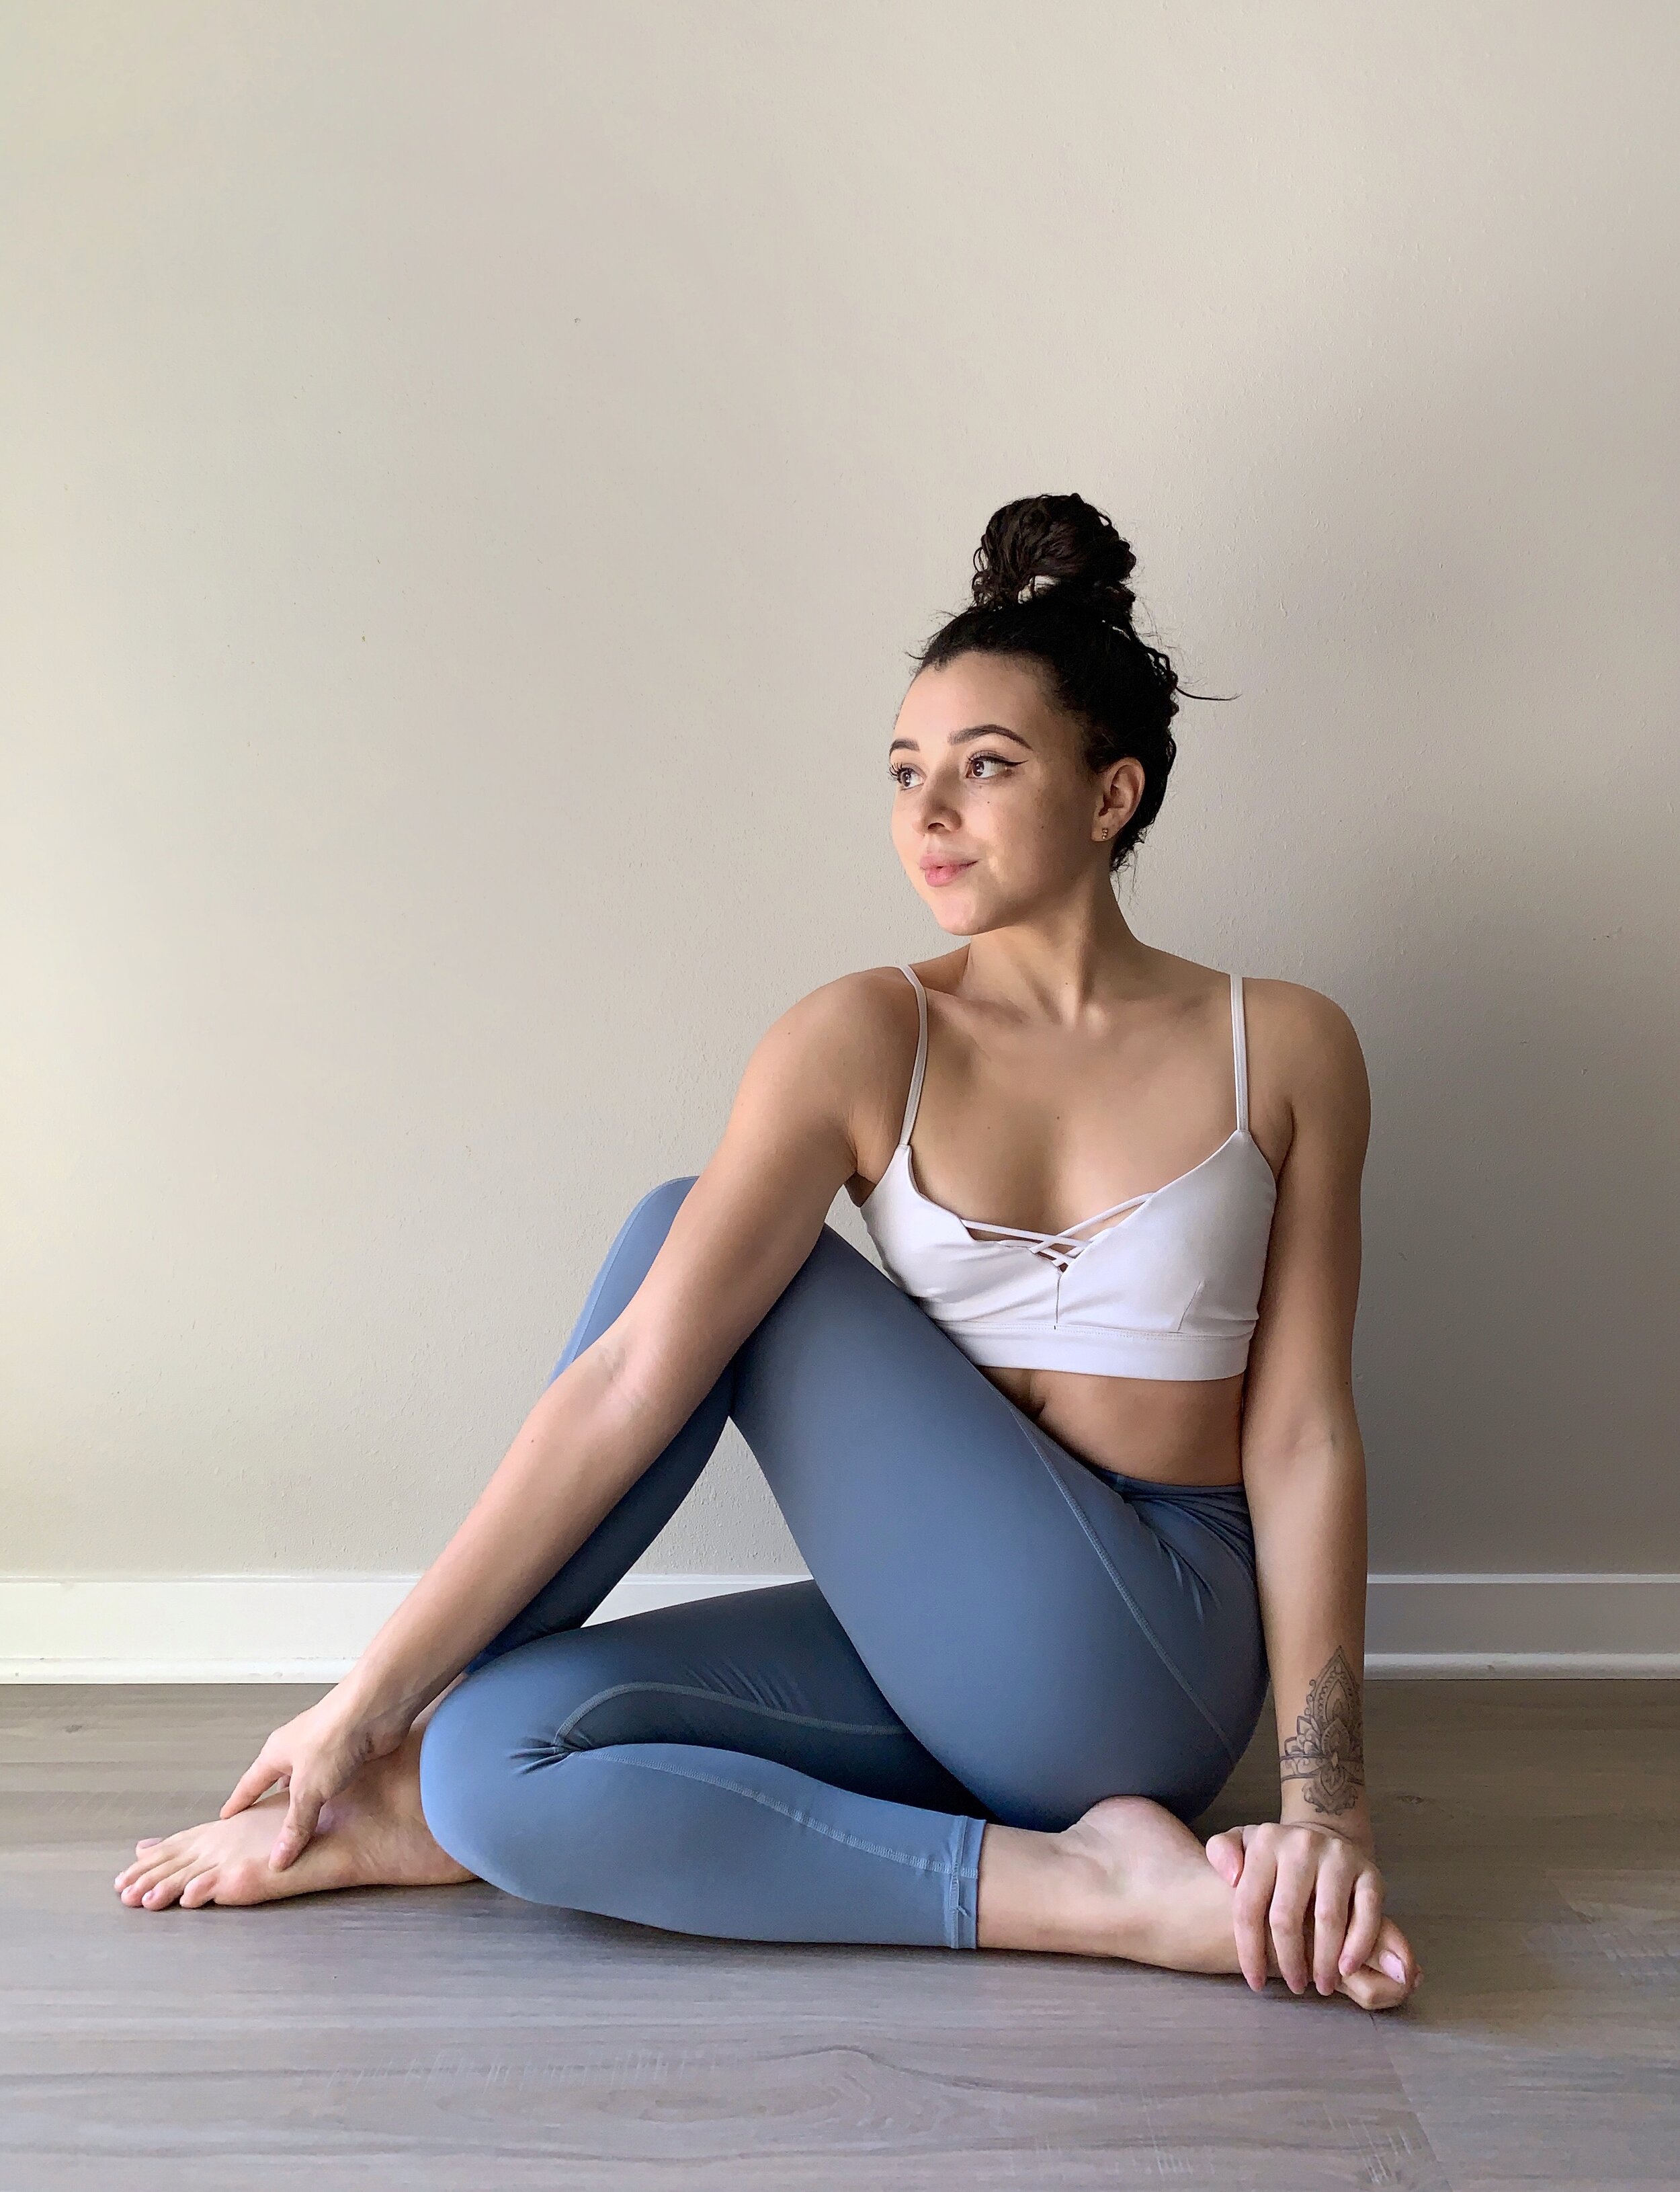 10 Yoga Poses for Beginners | Swami Ramdev - YouTube-nttc.com.vn